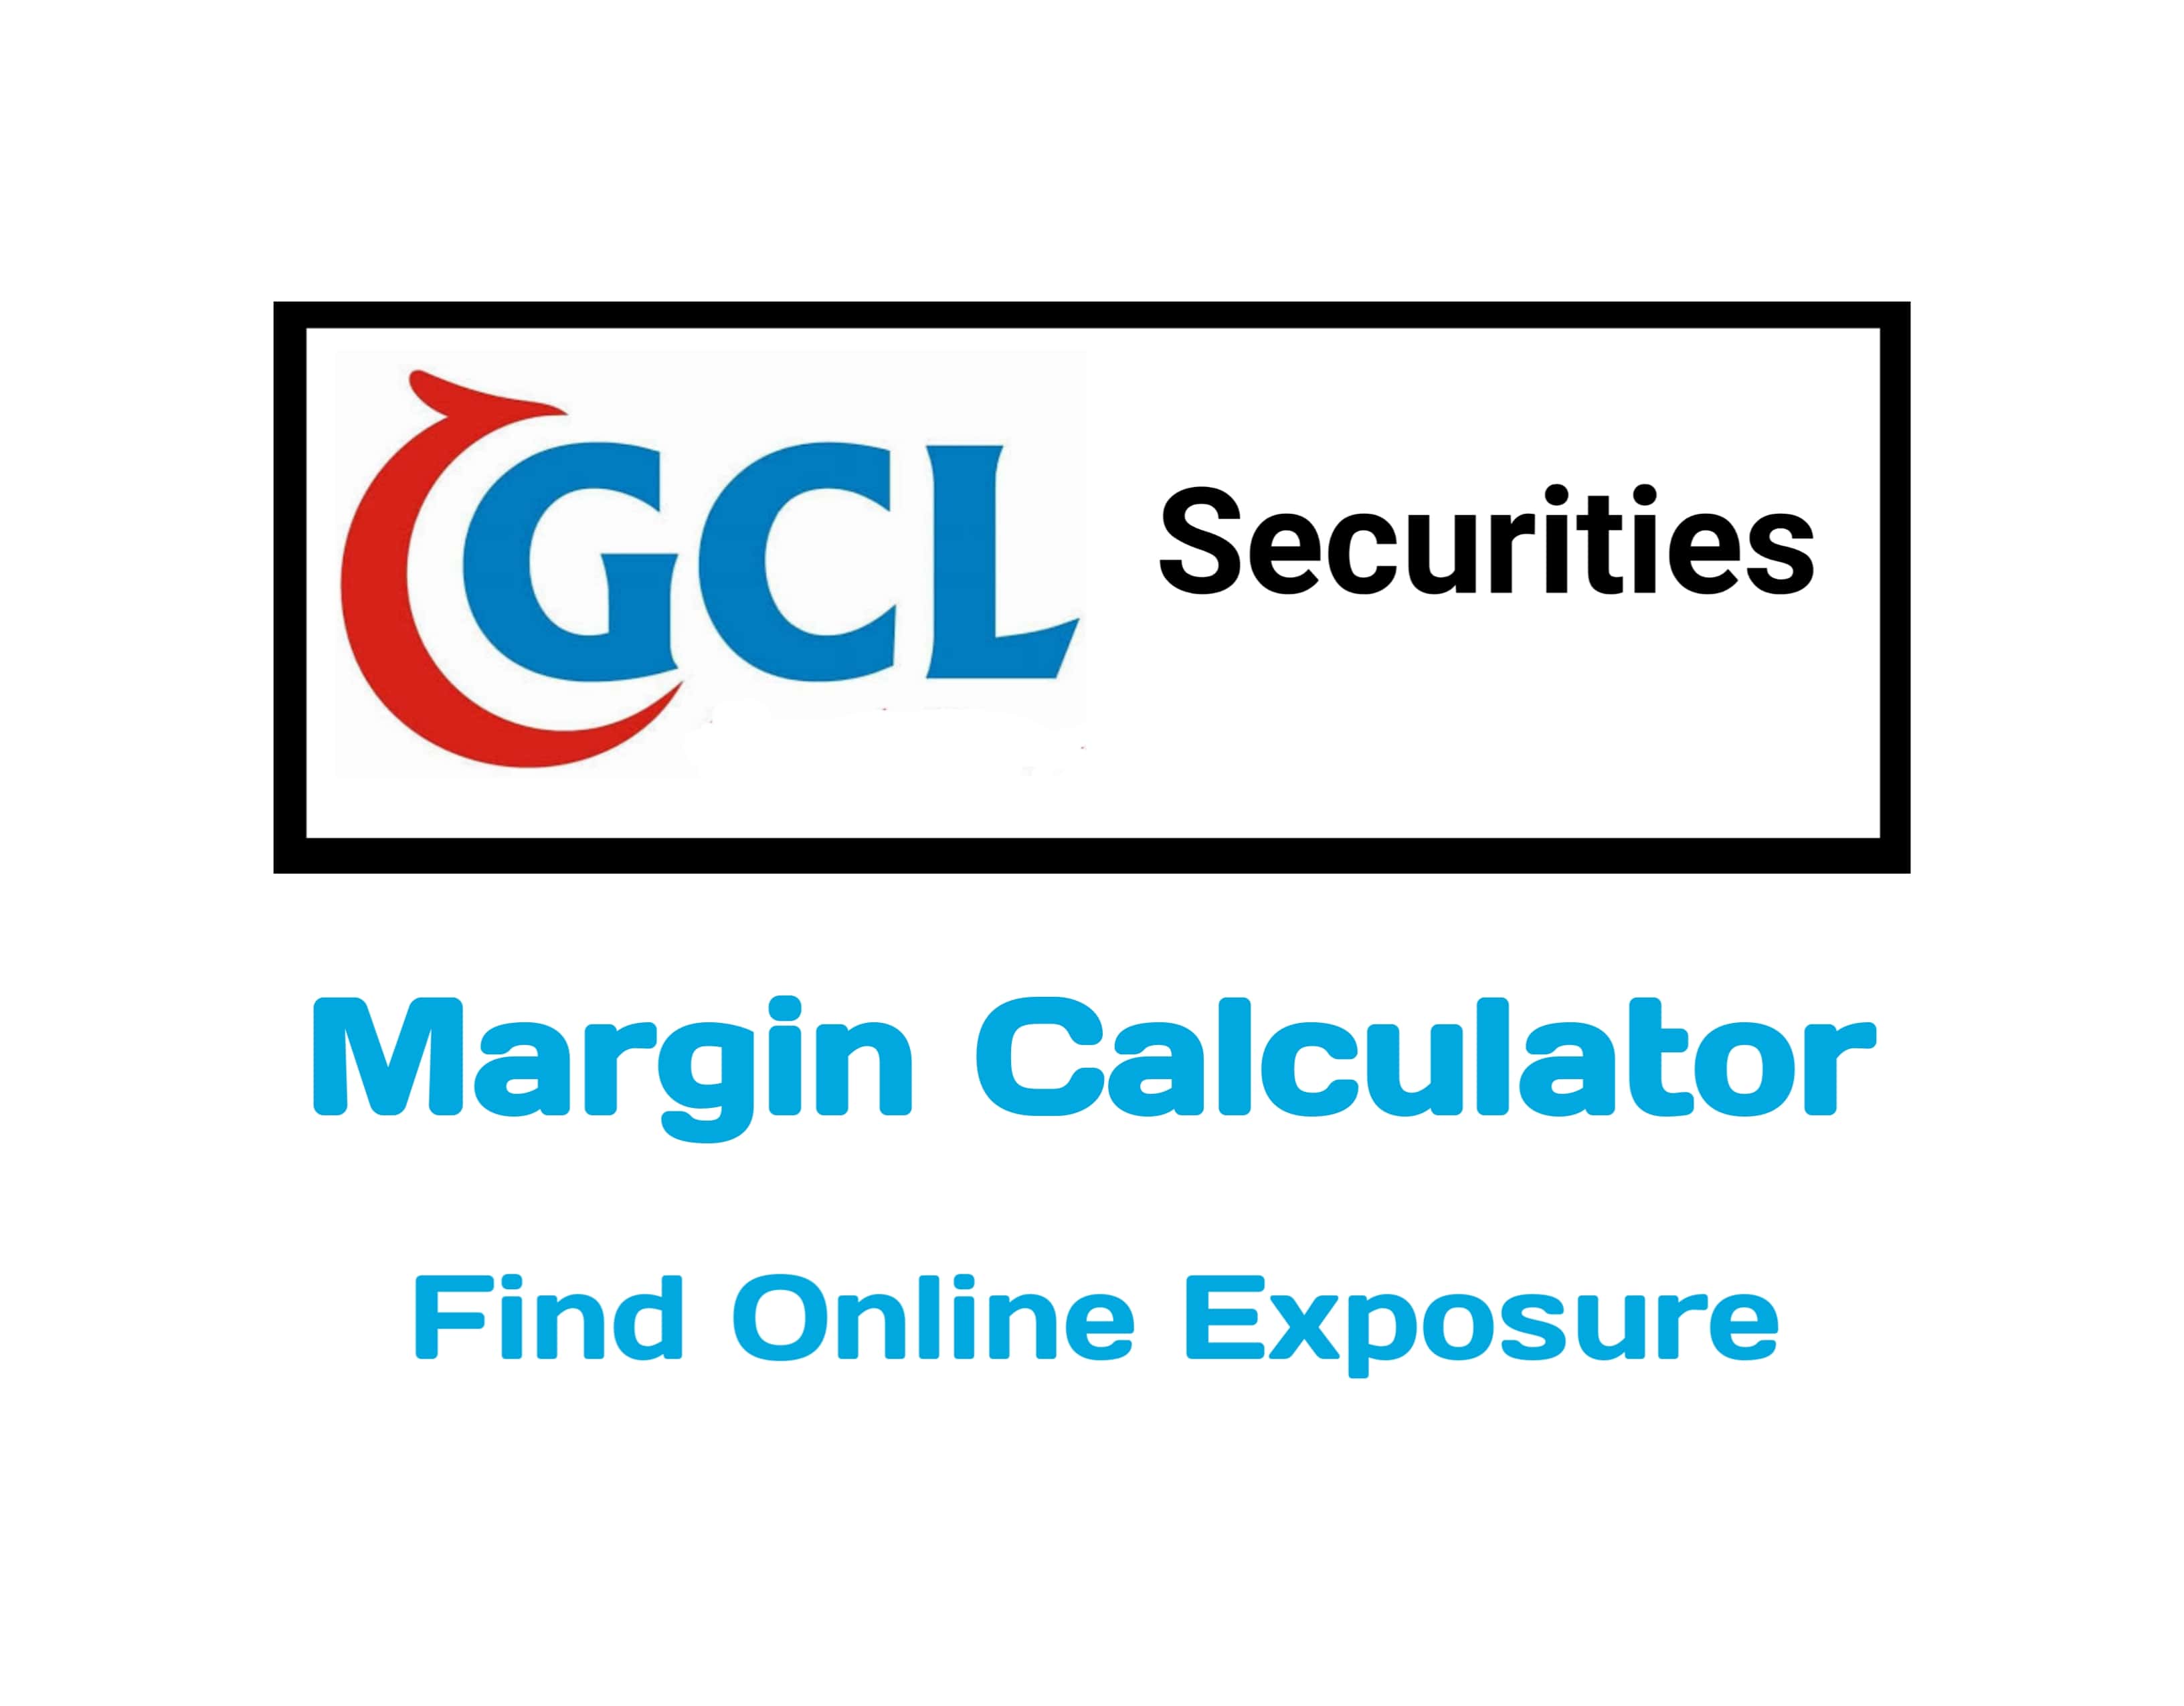 GCL Securities Margin Calculator